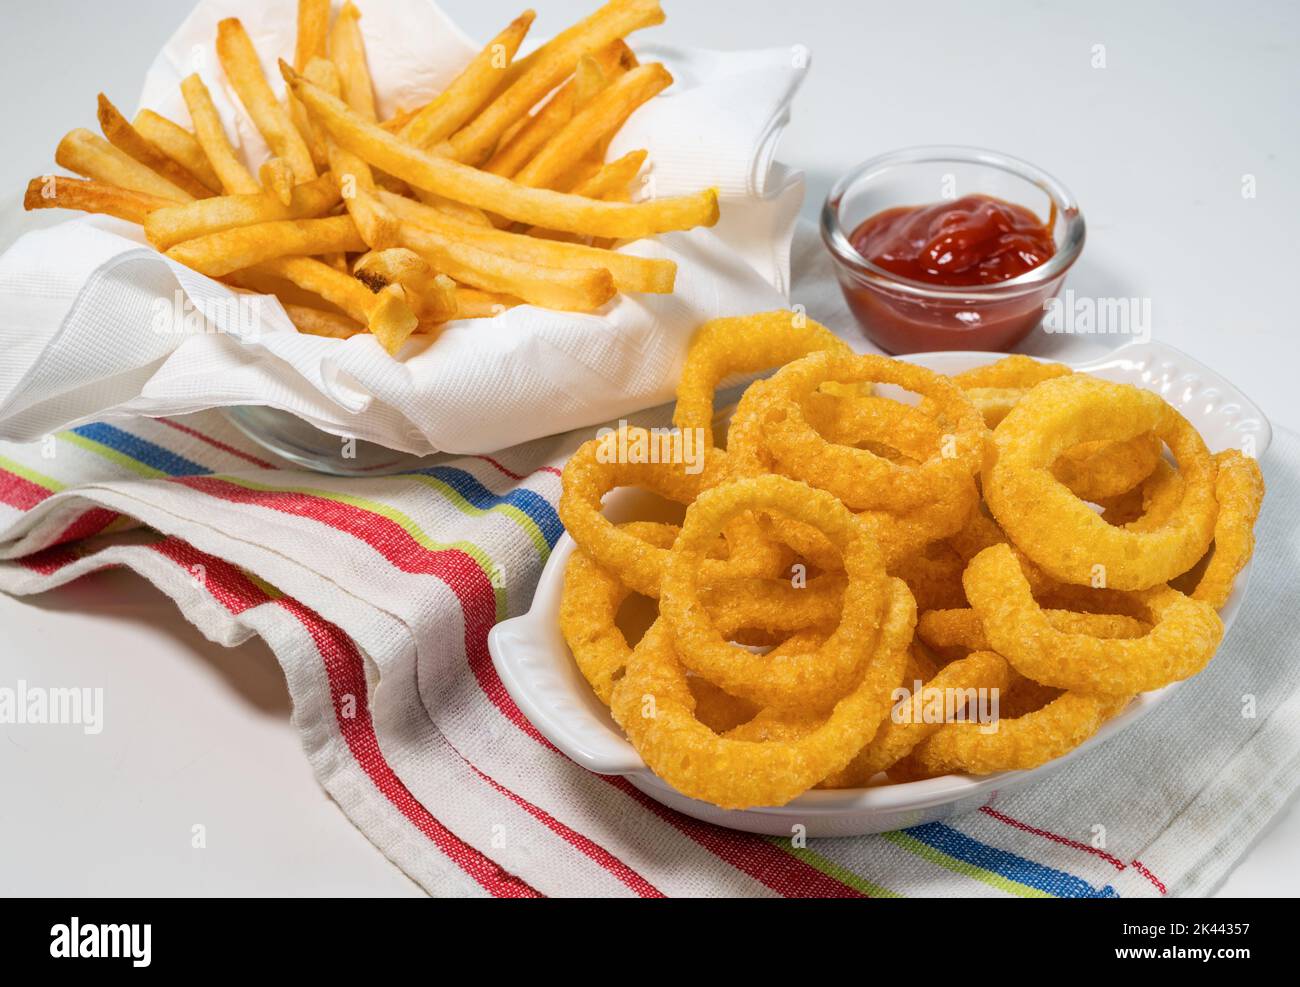 Anelli di cipolla fritti e patatine fritte con ketchup su tovaglia Foto Stock